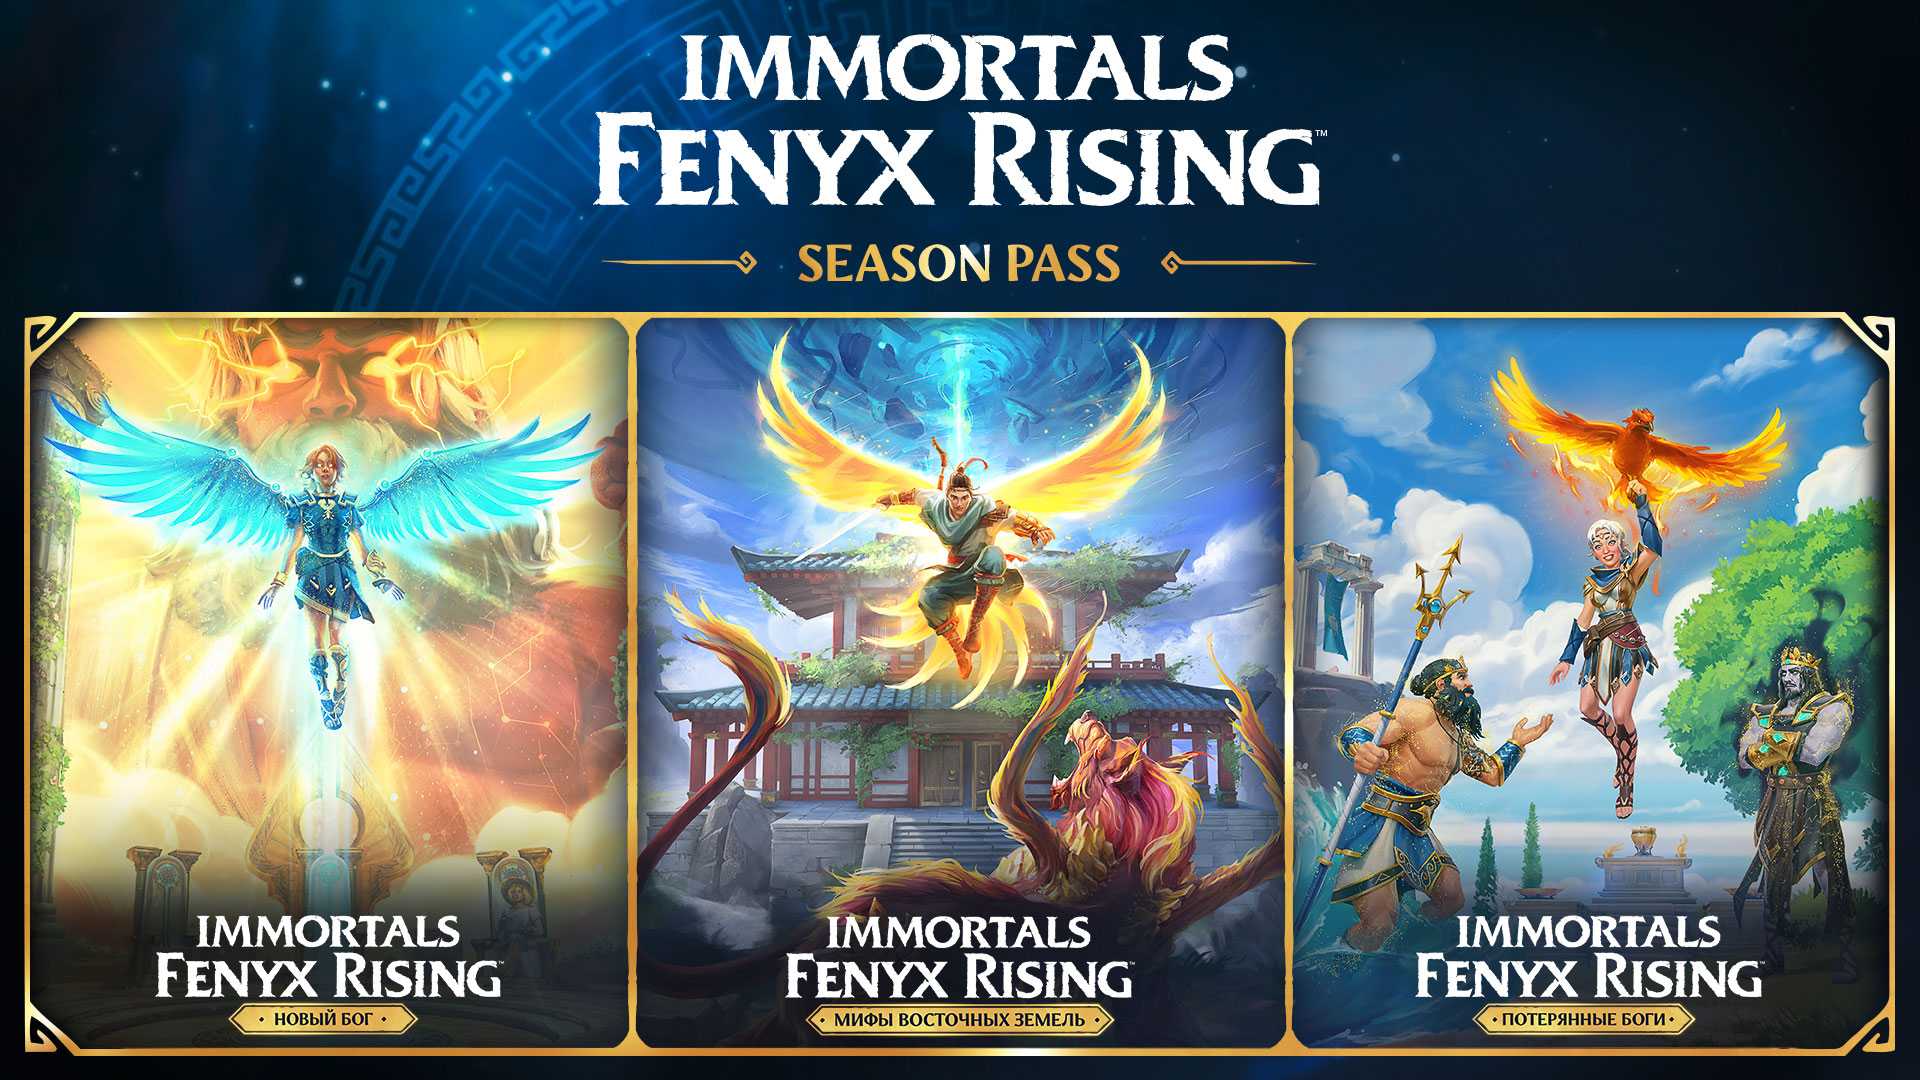 Immortals fenyx rising myth challenges: как получить монеты харона - все топовые игровые новости, обзоры и руководства на одном сайте.